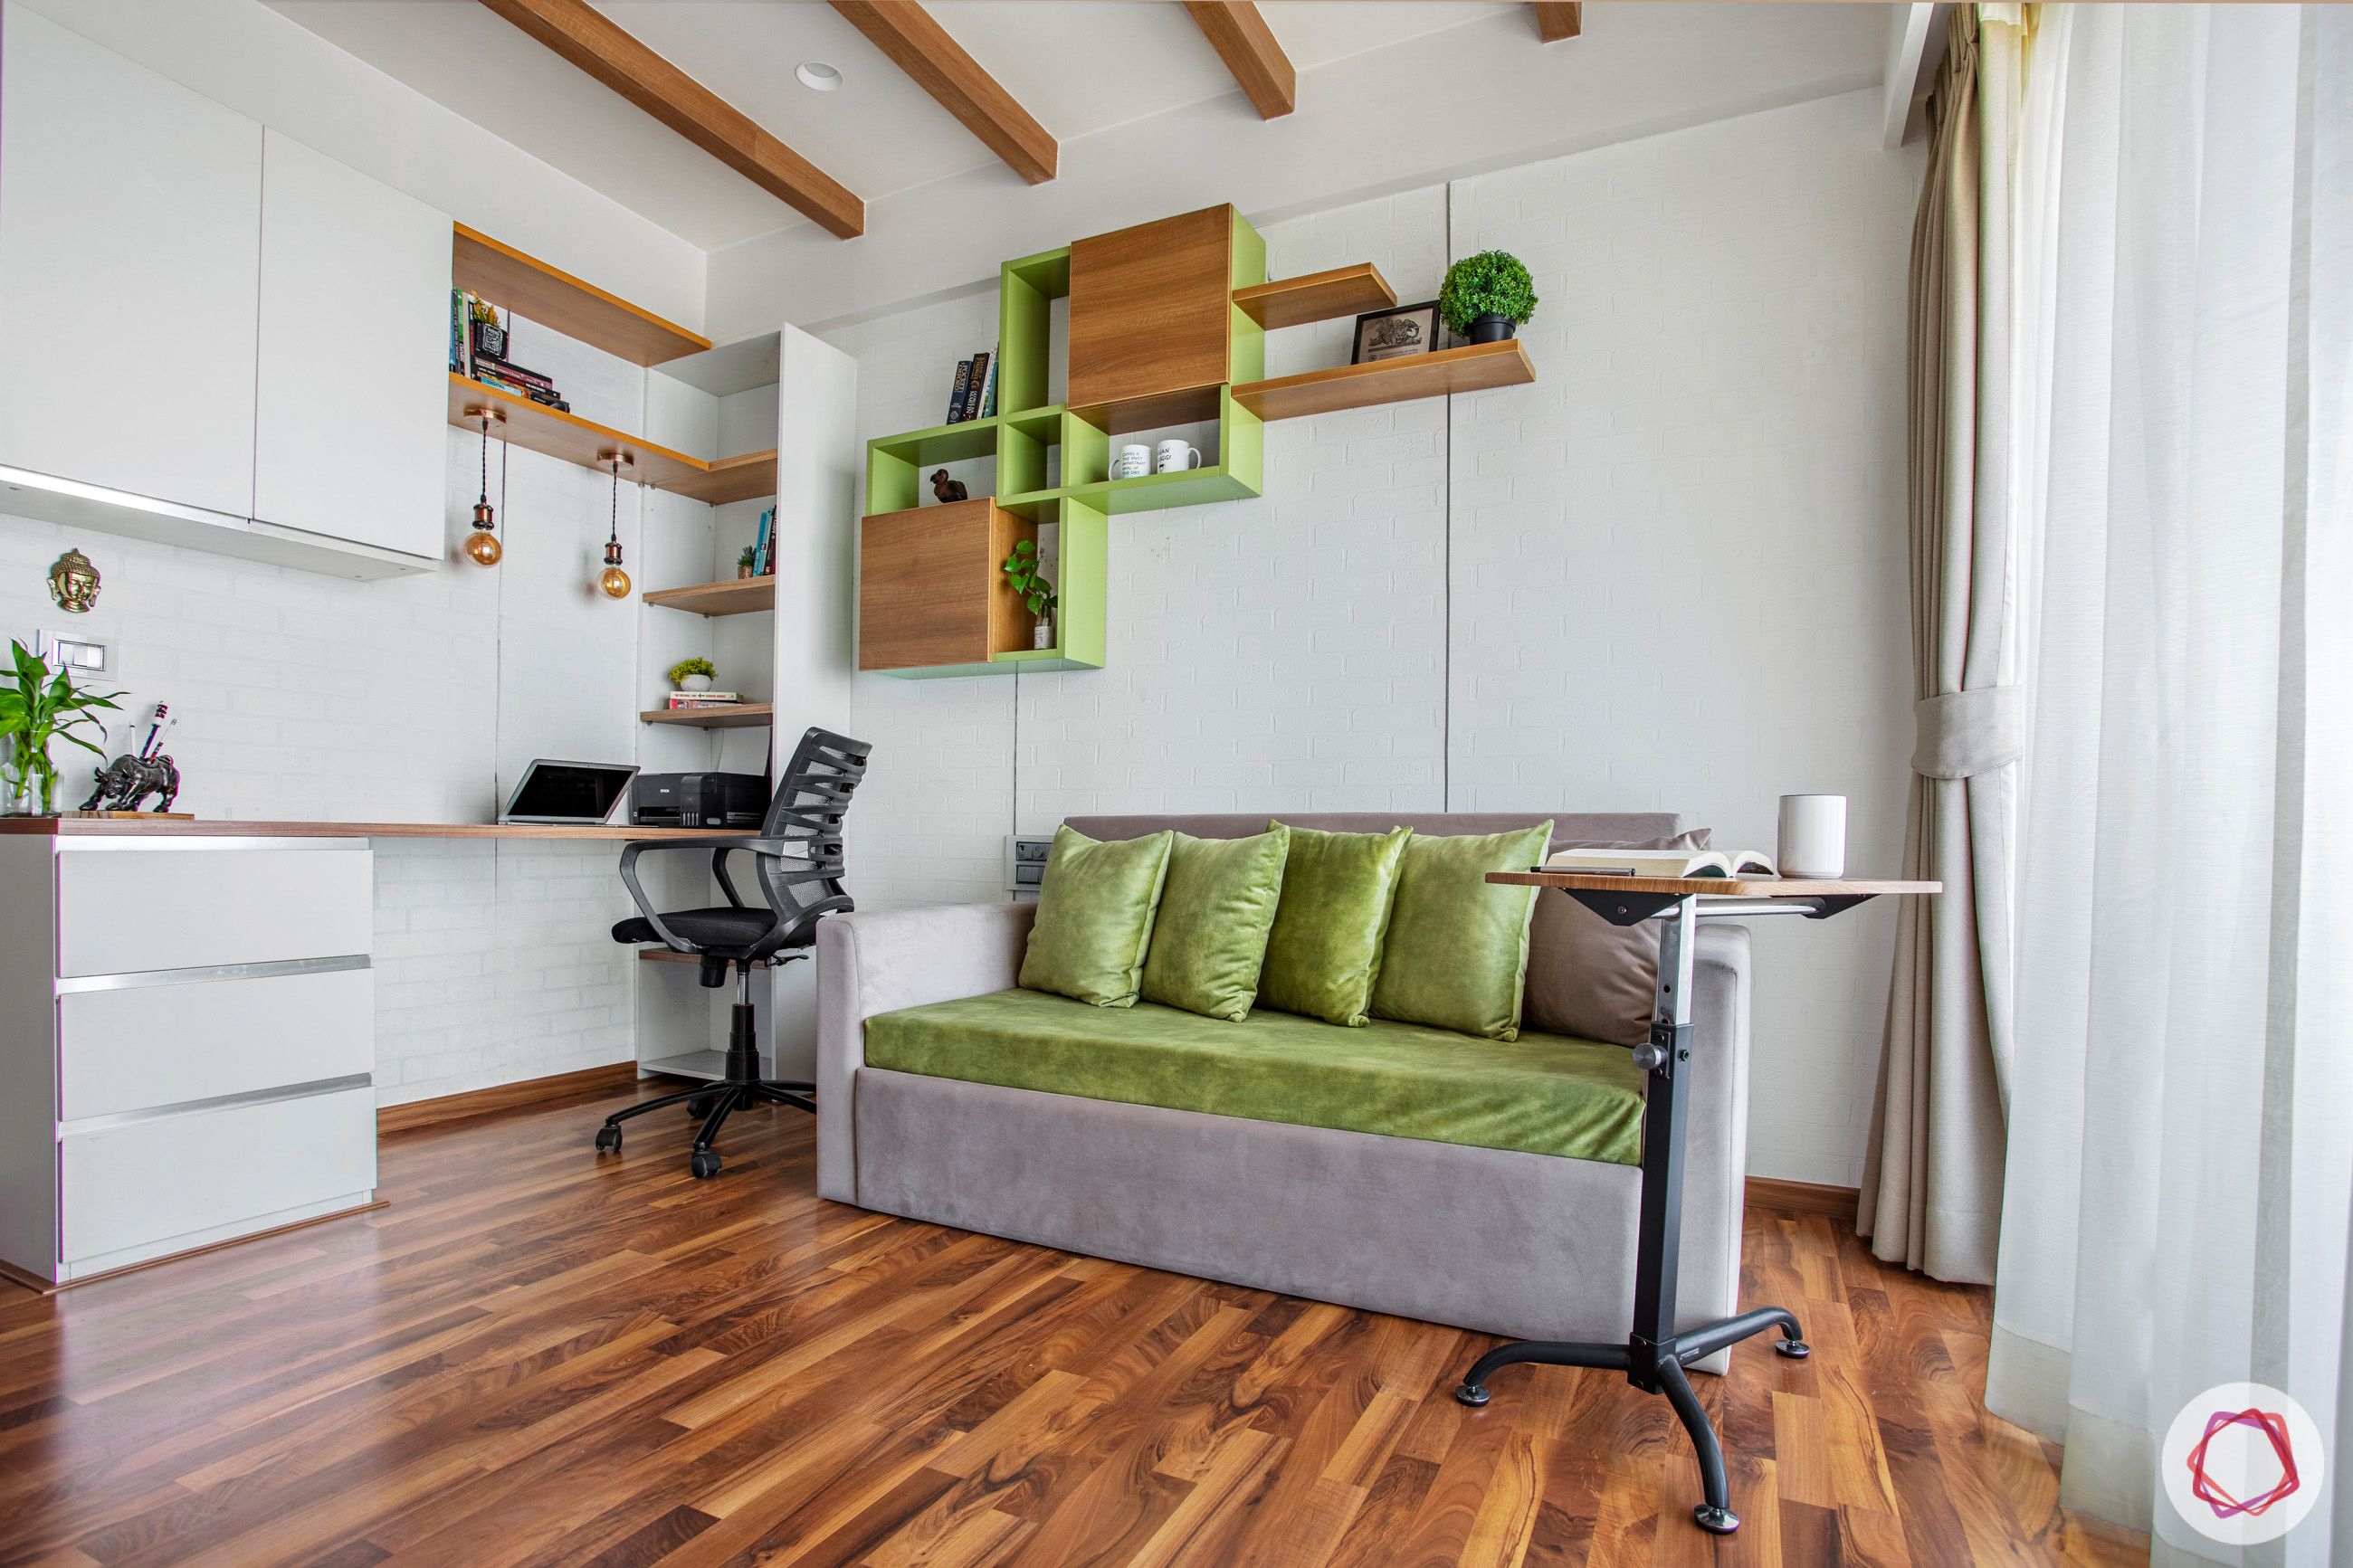 study-sofa-cum-bed-rafters-wooden-floor